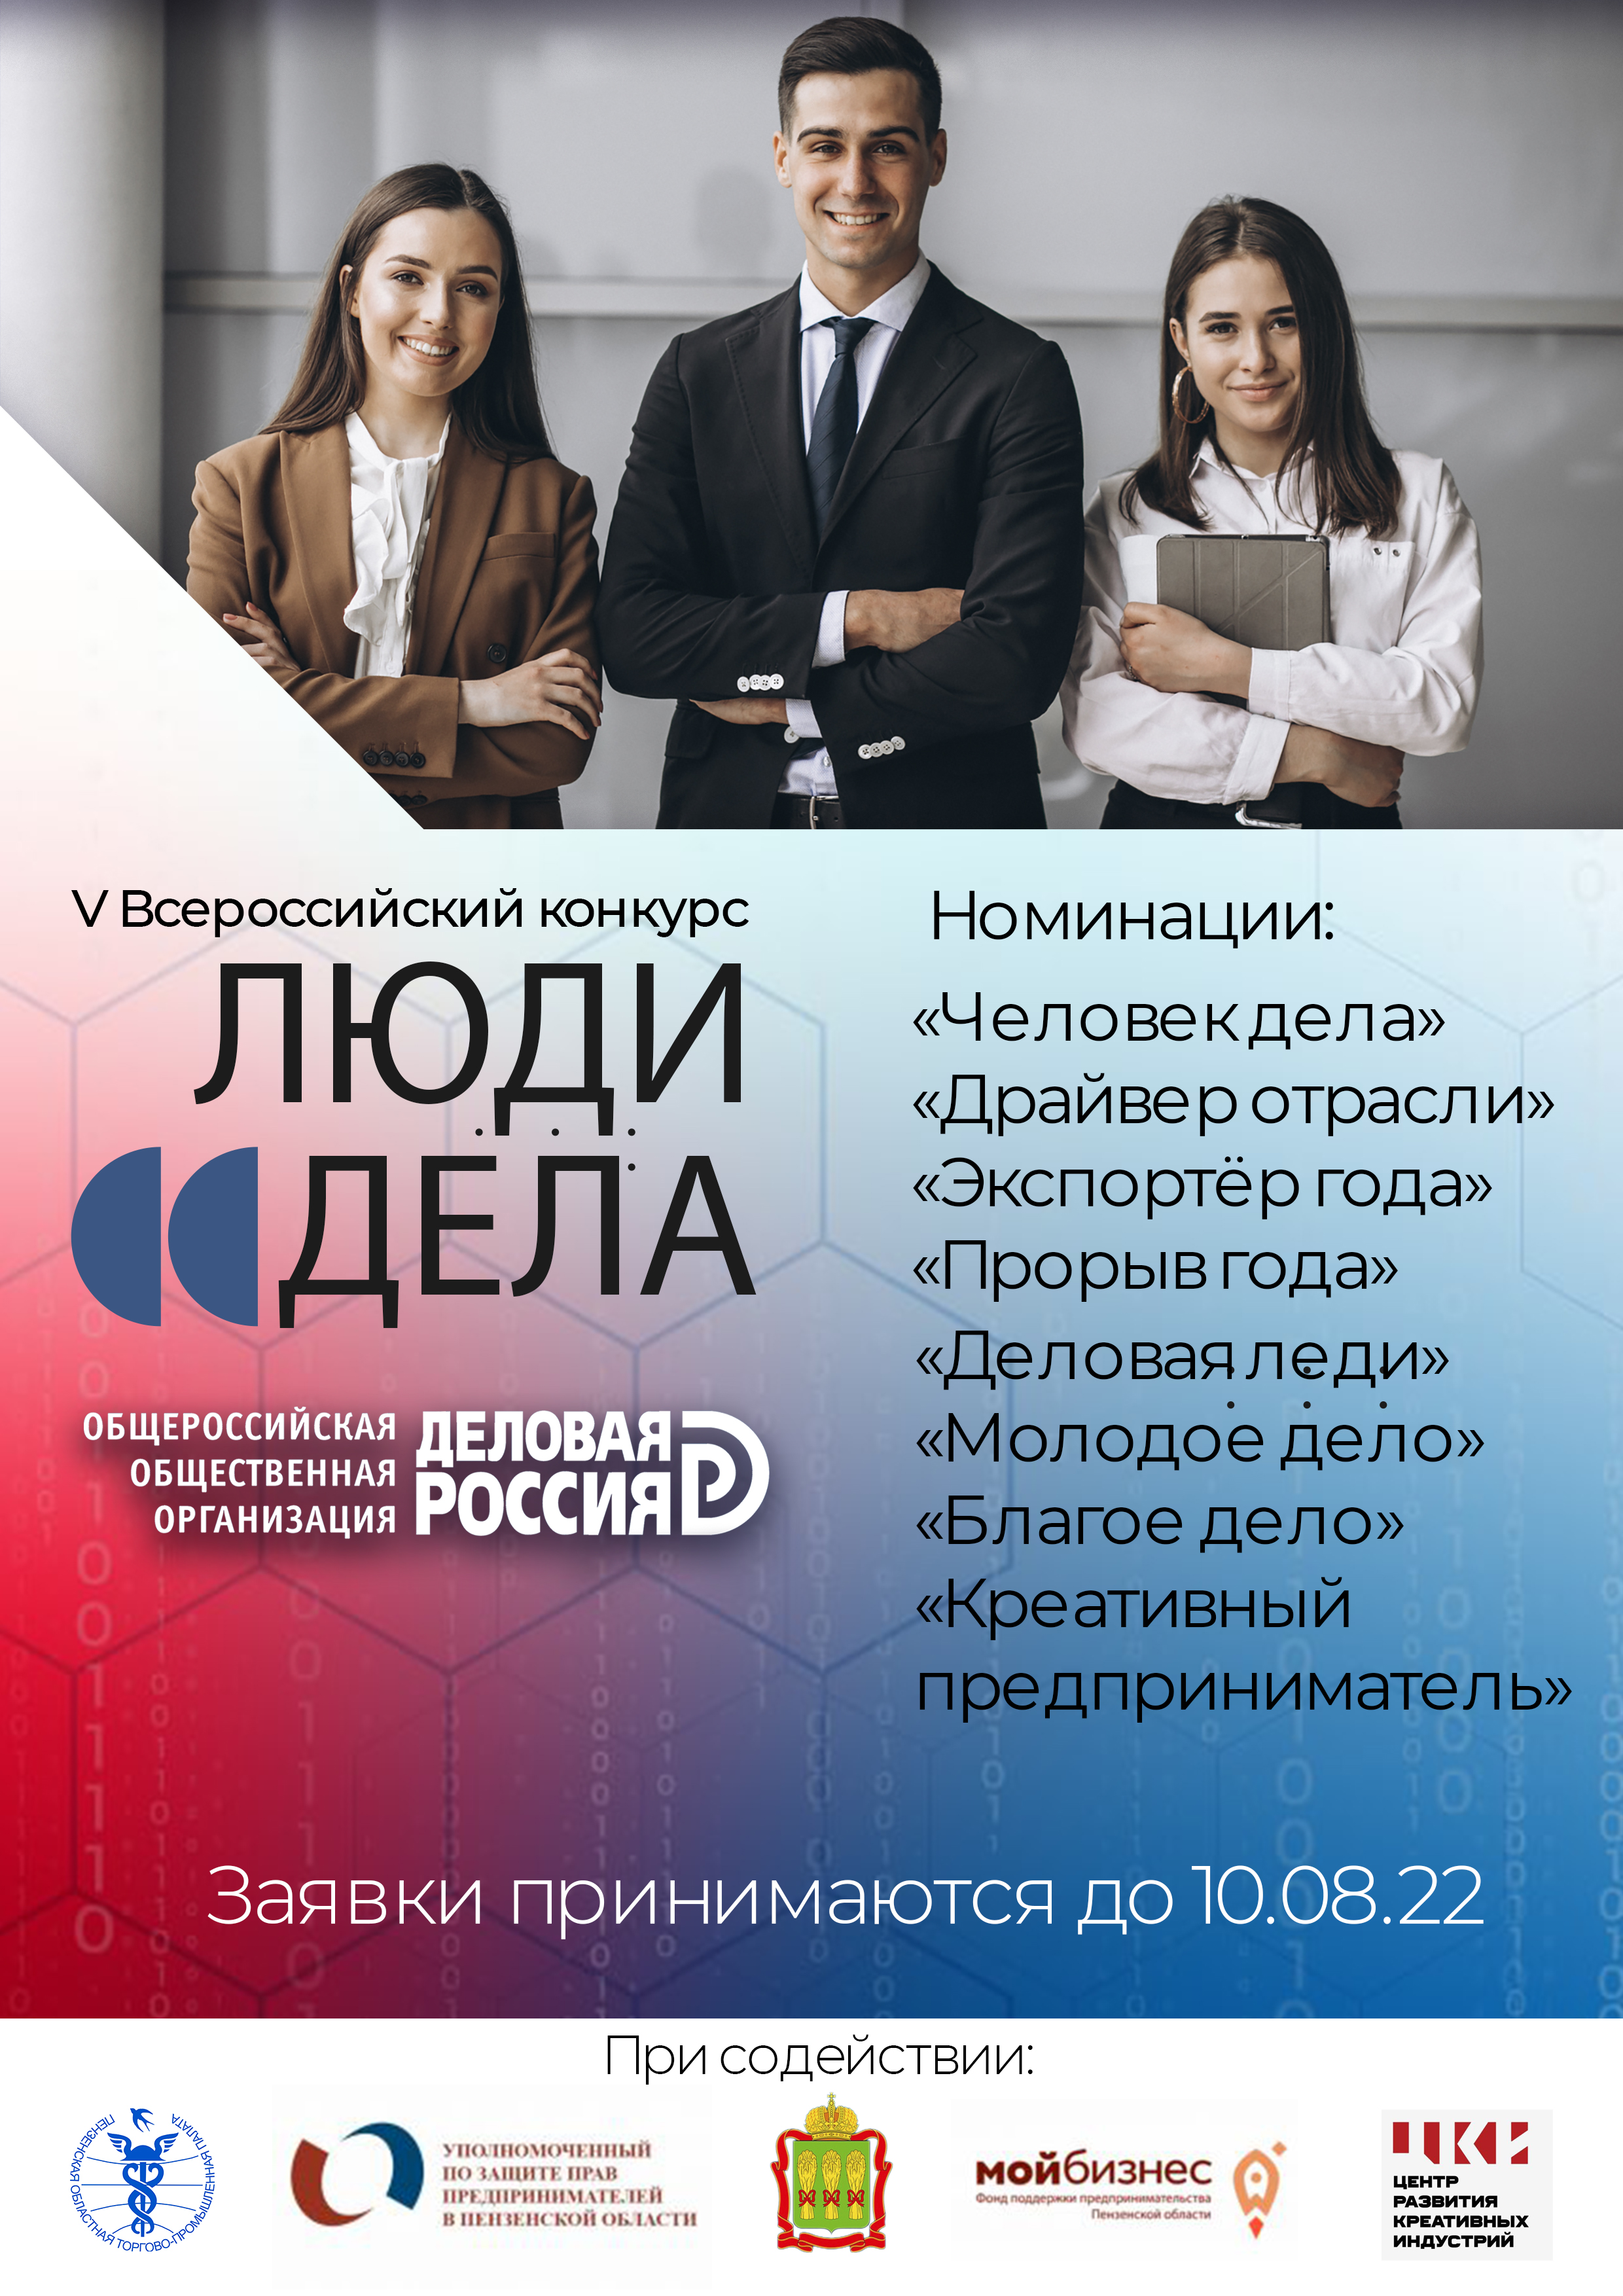 «Деловая Россия» объявляет старт V Всероссийского ежегодного конкурса «Люди дела»-2022»